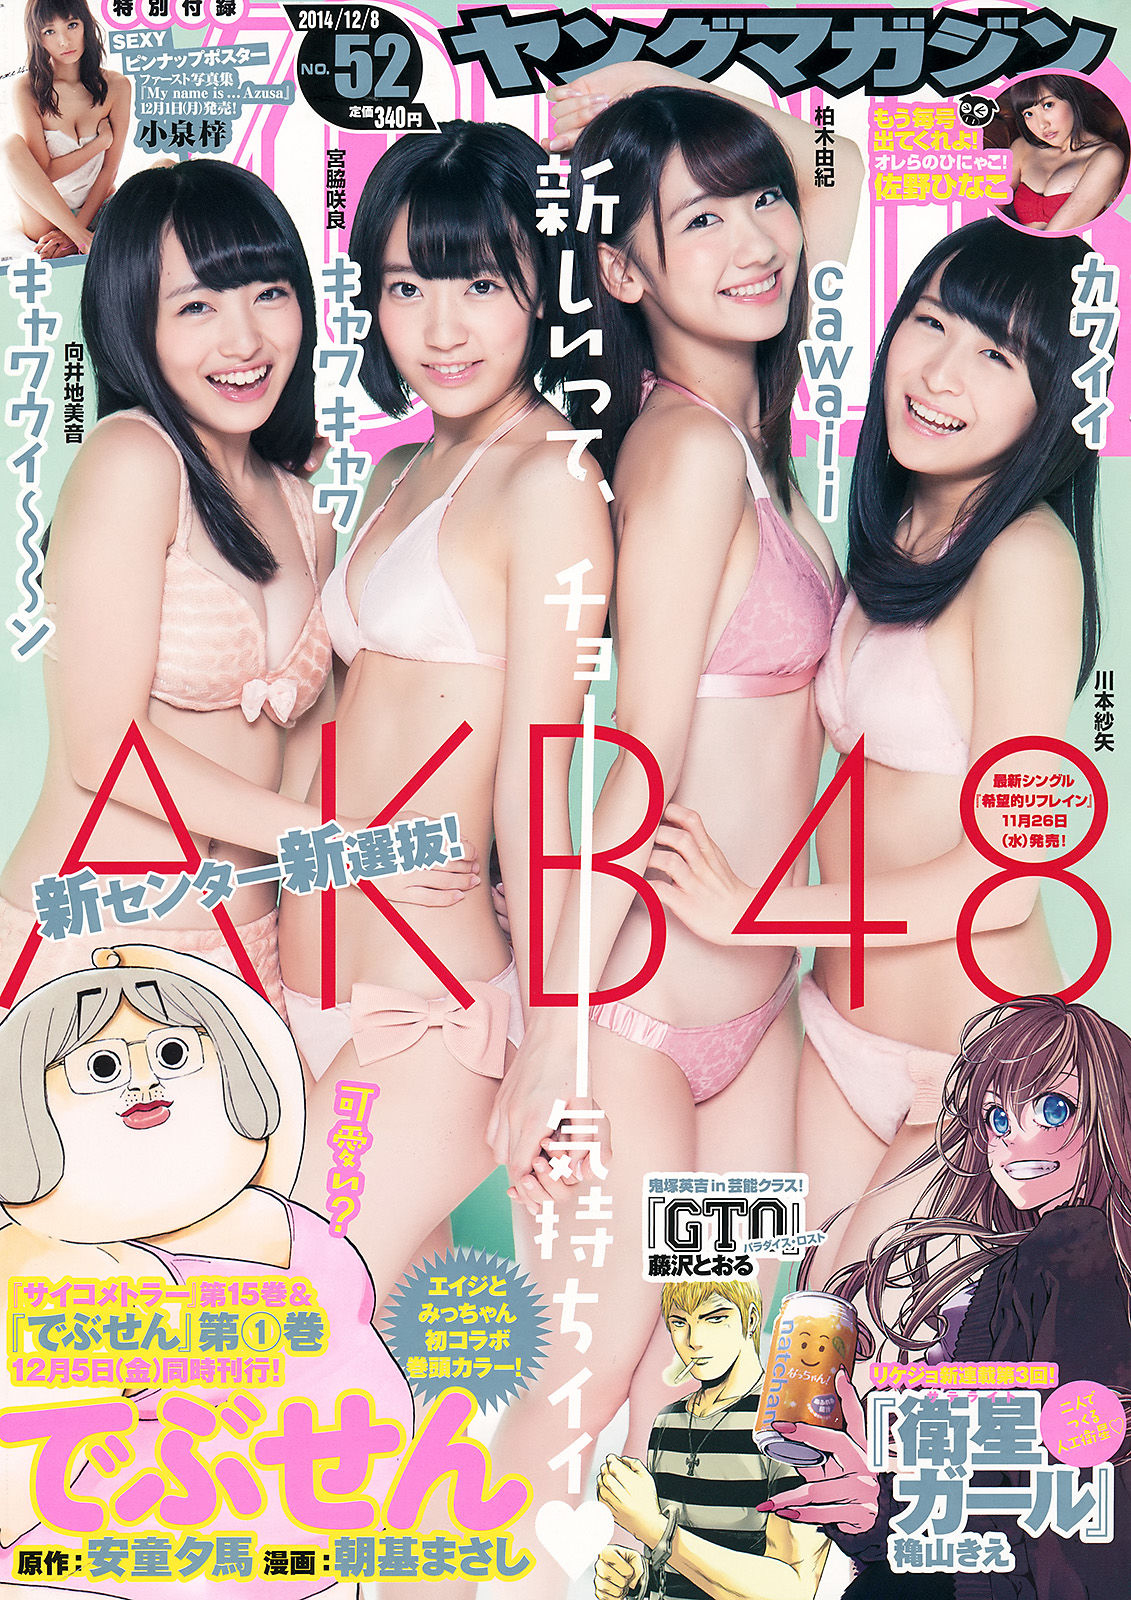 [Young Magazine]杂志:AKB48高品质绝版网图珍藏版(14P)